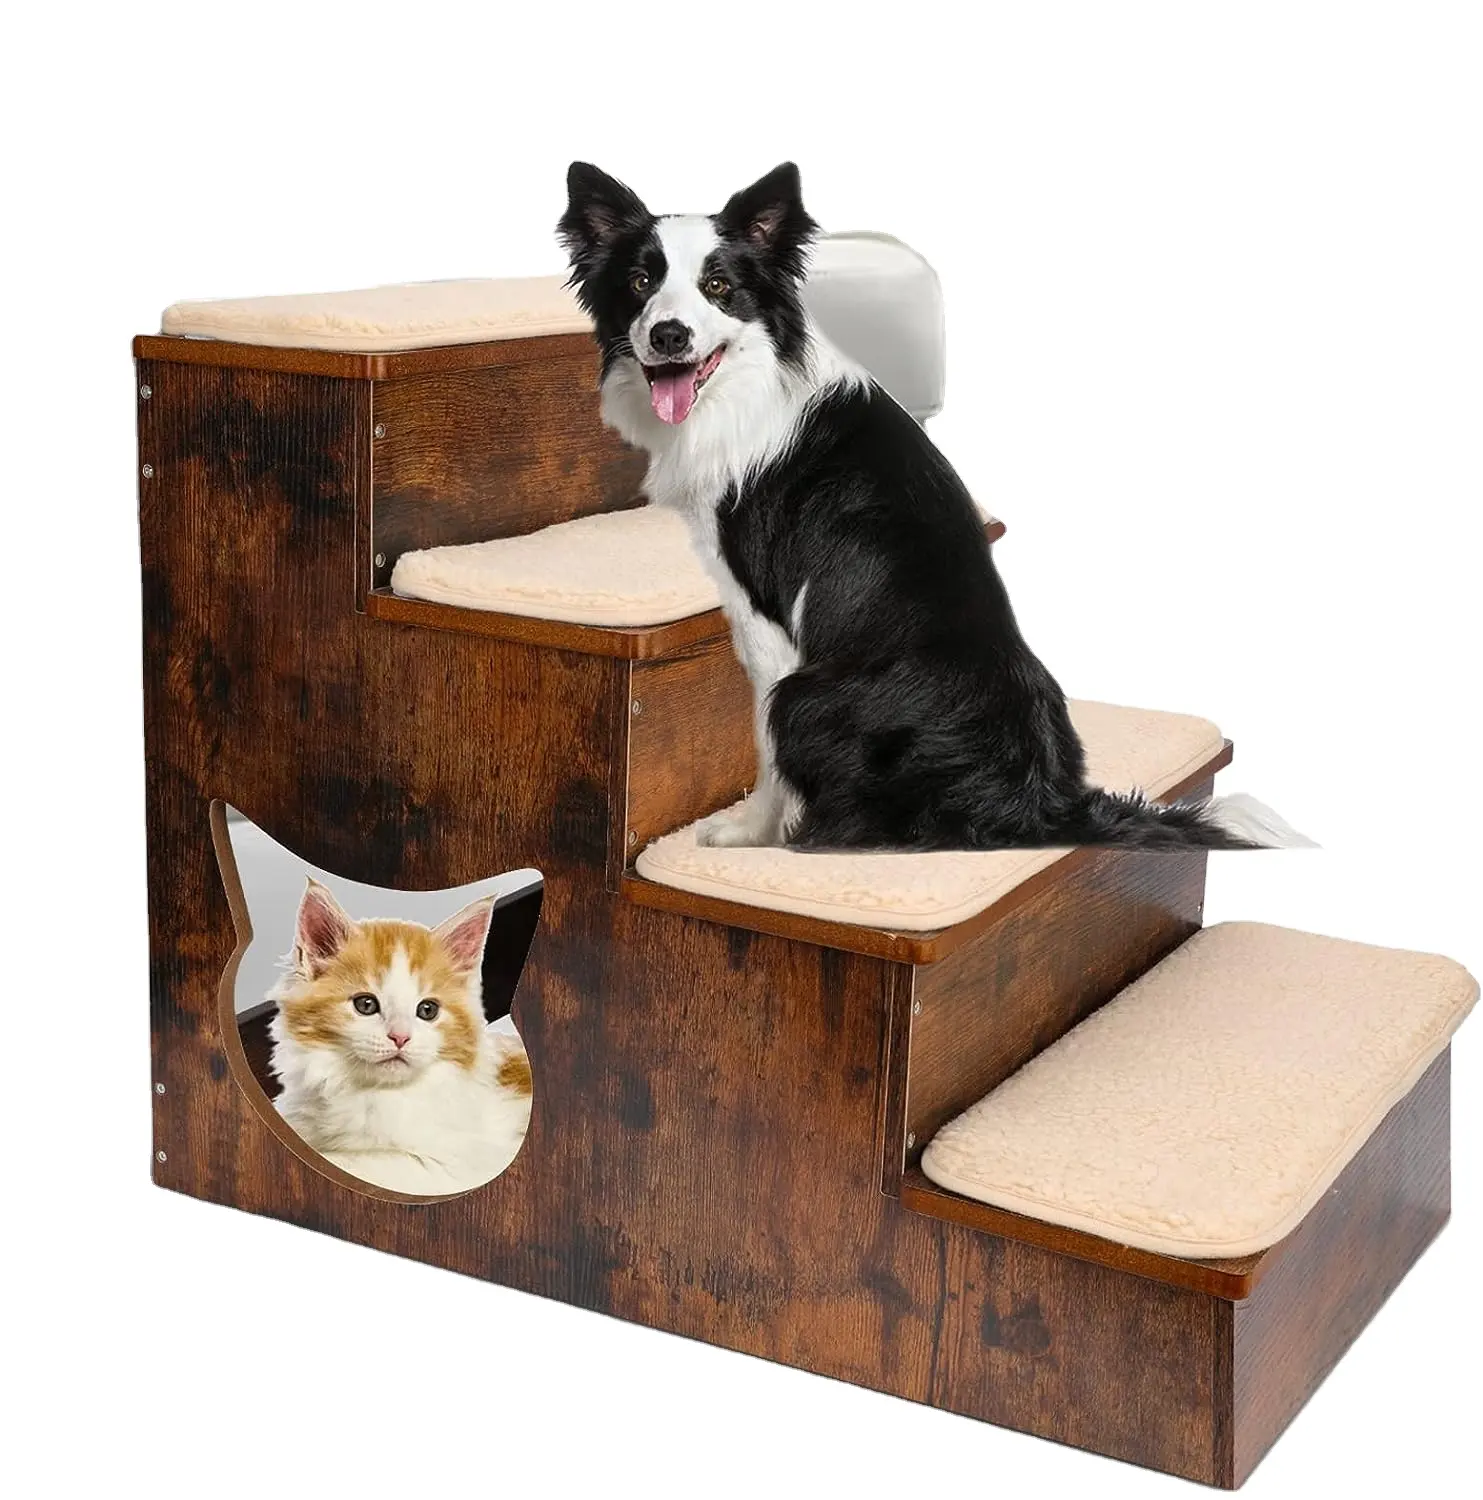 Holz Haustier Treppen für Hochbett Couch Tragbare Haustier Hund Schritte mit Stauraum Holz Haustier Stufen